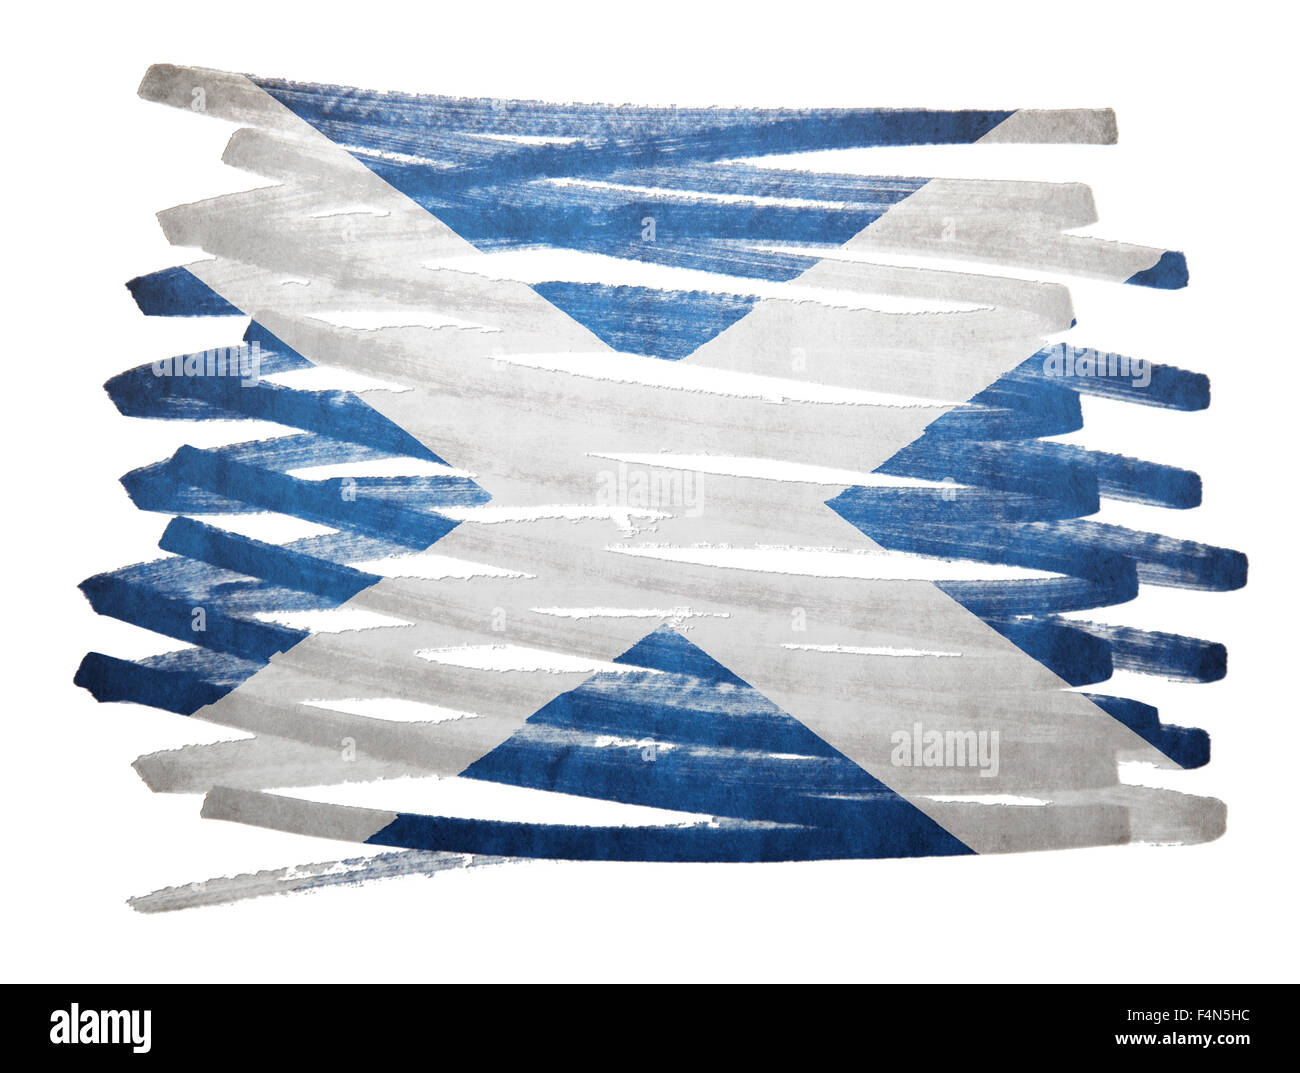 Flag illustration réalisée avec stylo - Ecosse Banque D'Images